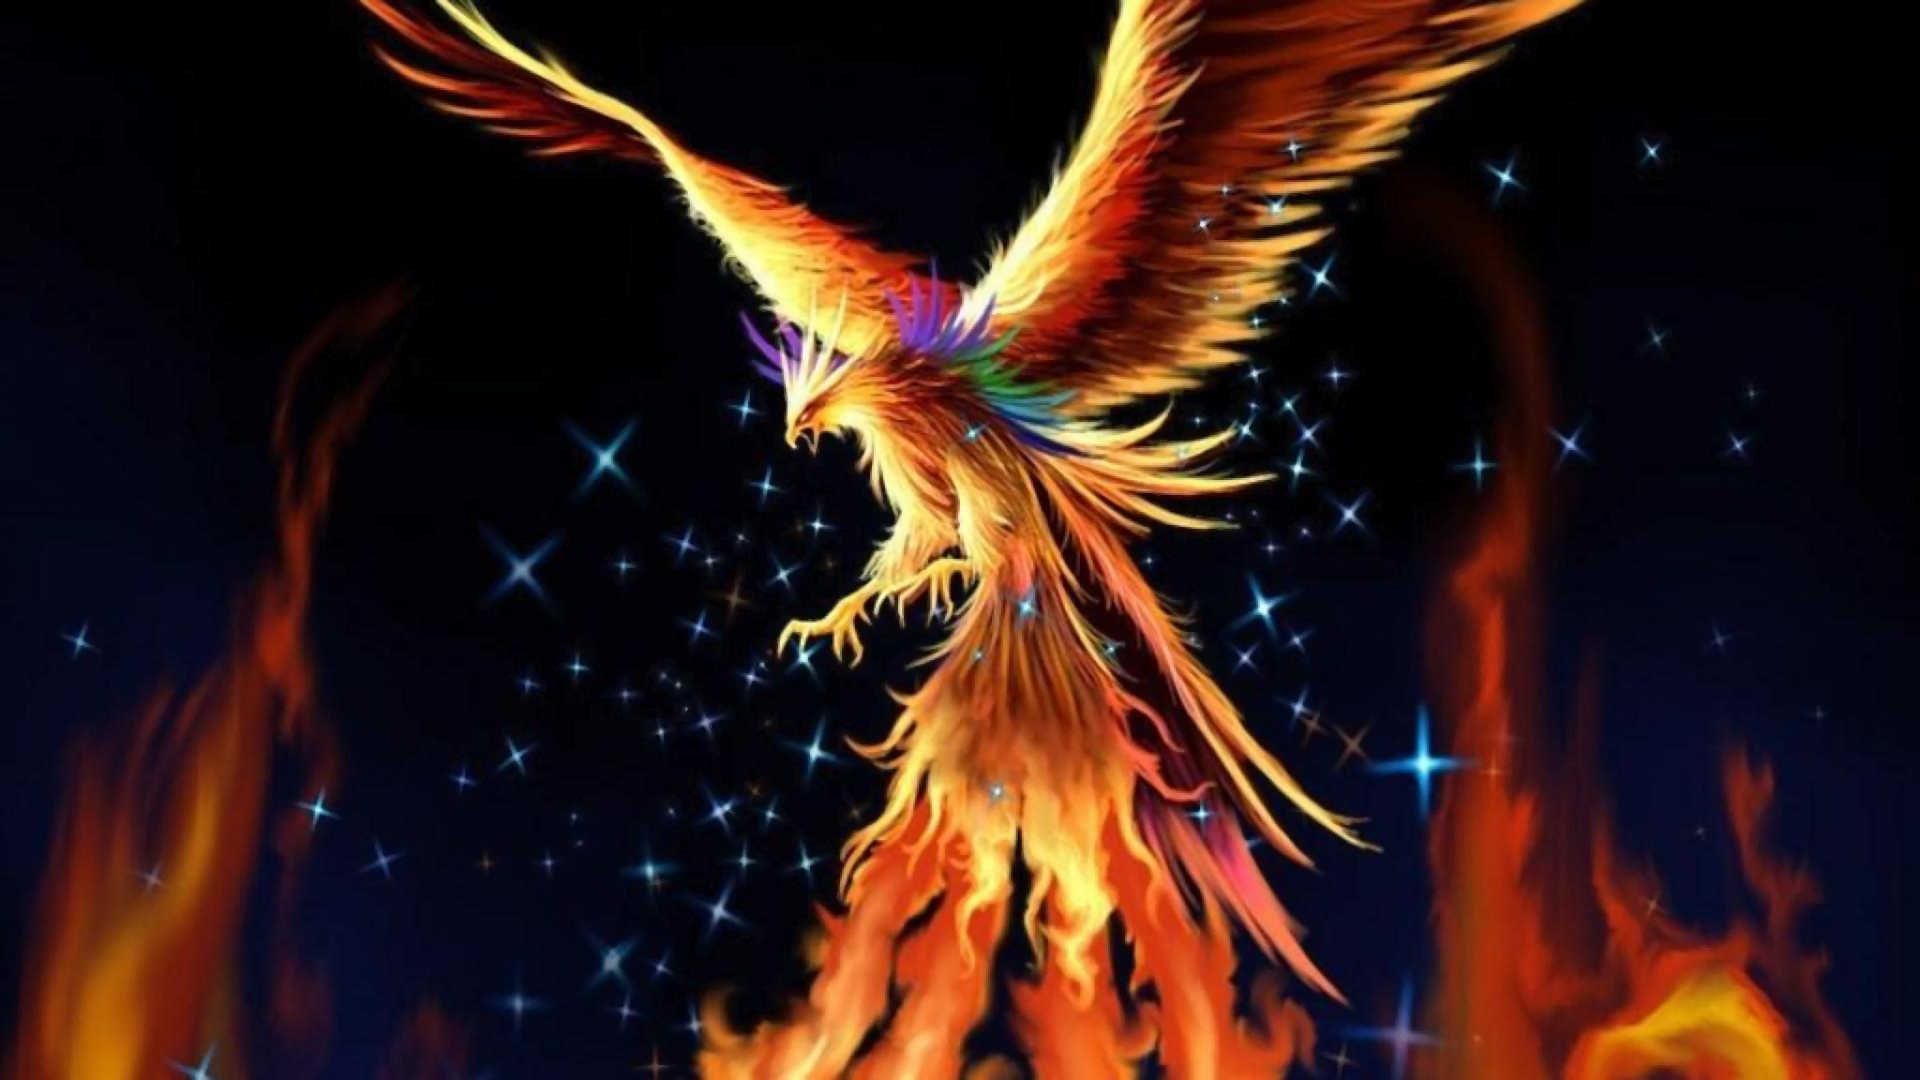 Artistic Bird Fire Phoenix 1920x1080